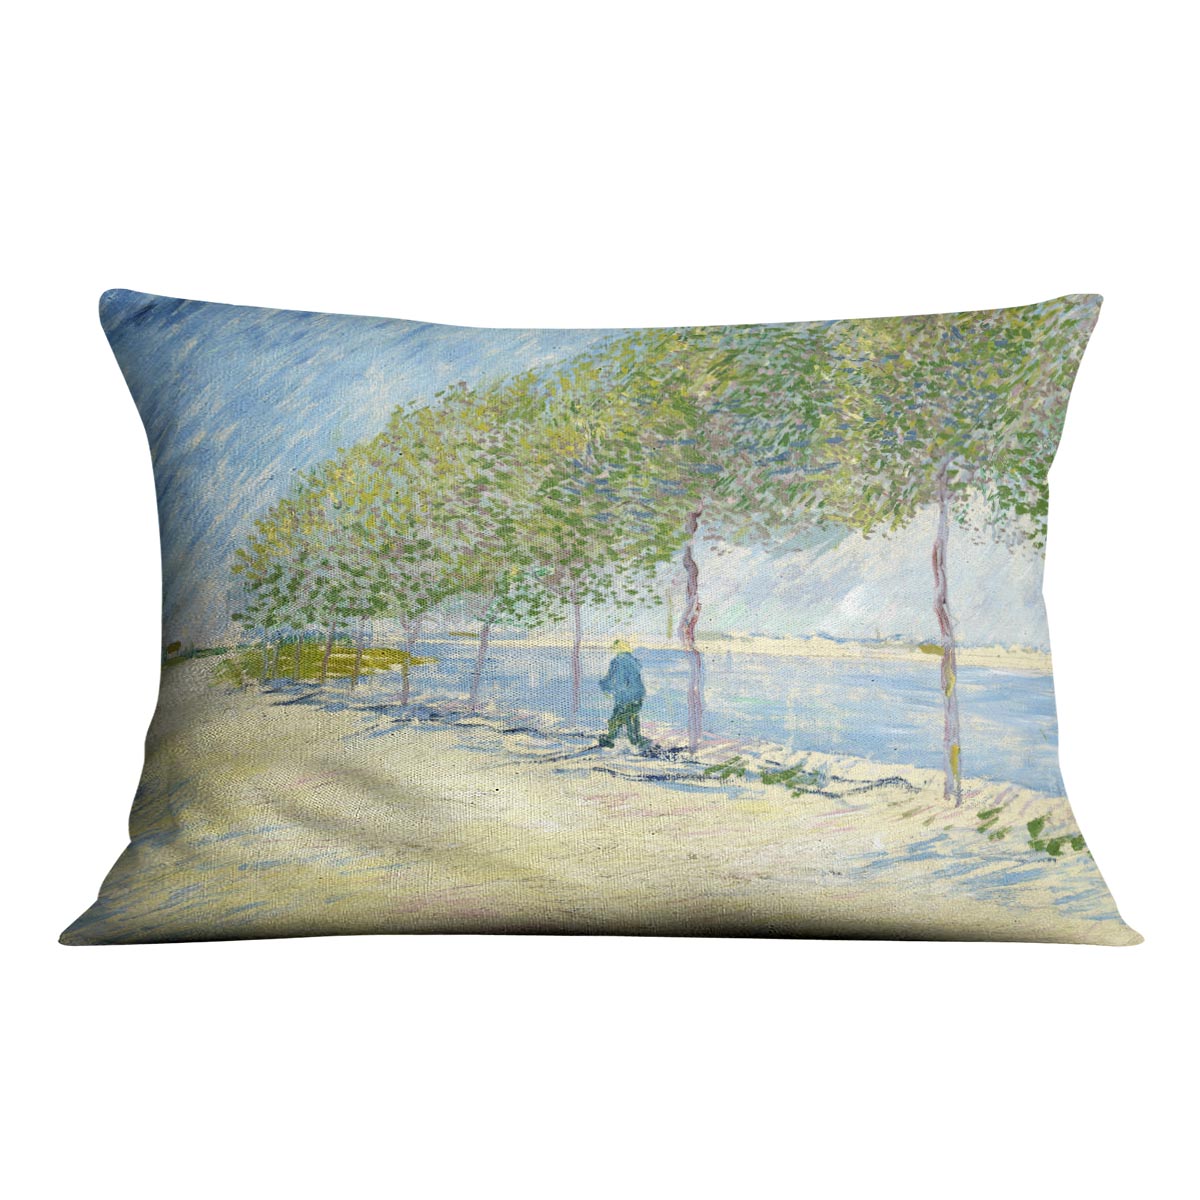 Along the Seine by Van Gogh Cushion